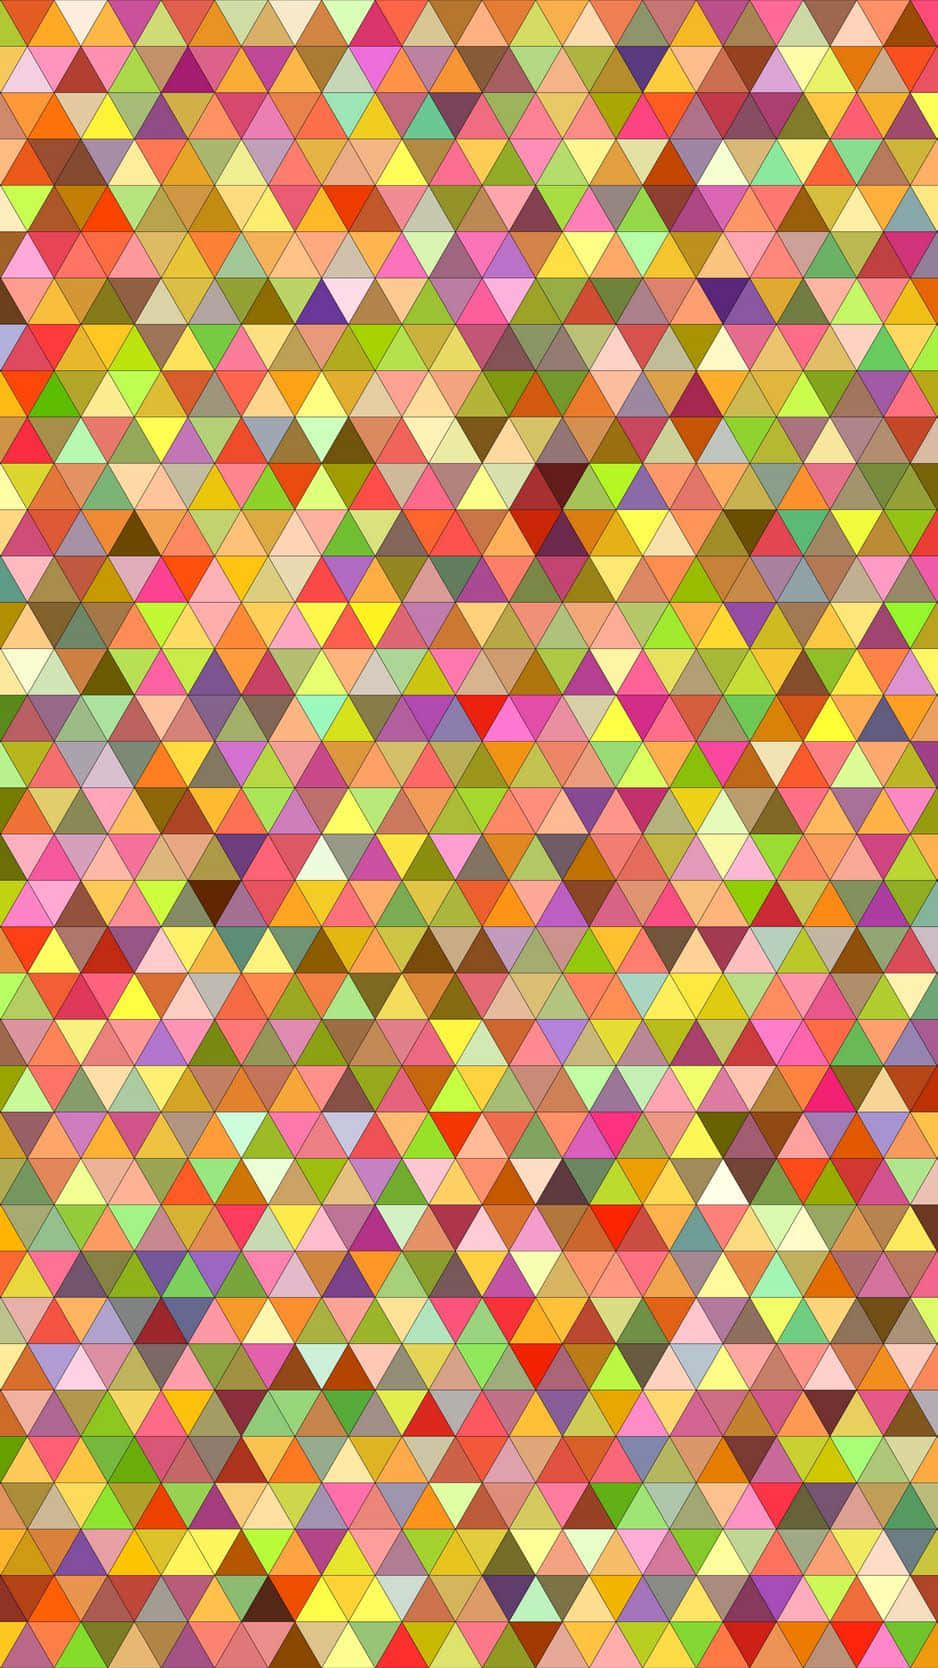 Einpsychedelisches Muster Aus Leuchtenden Farben In Einem Mehrfarbigen Design